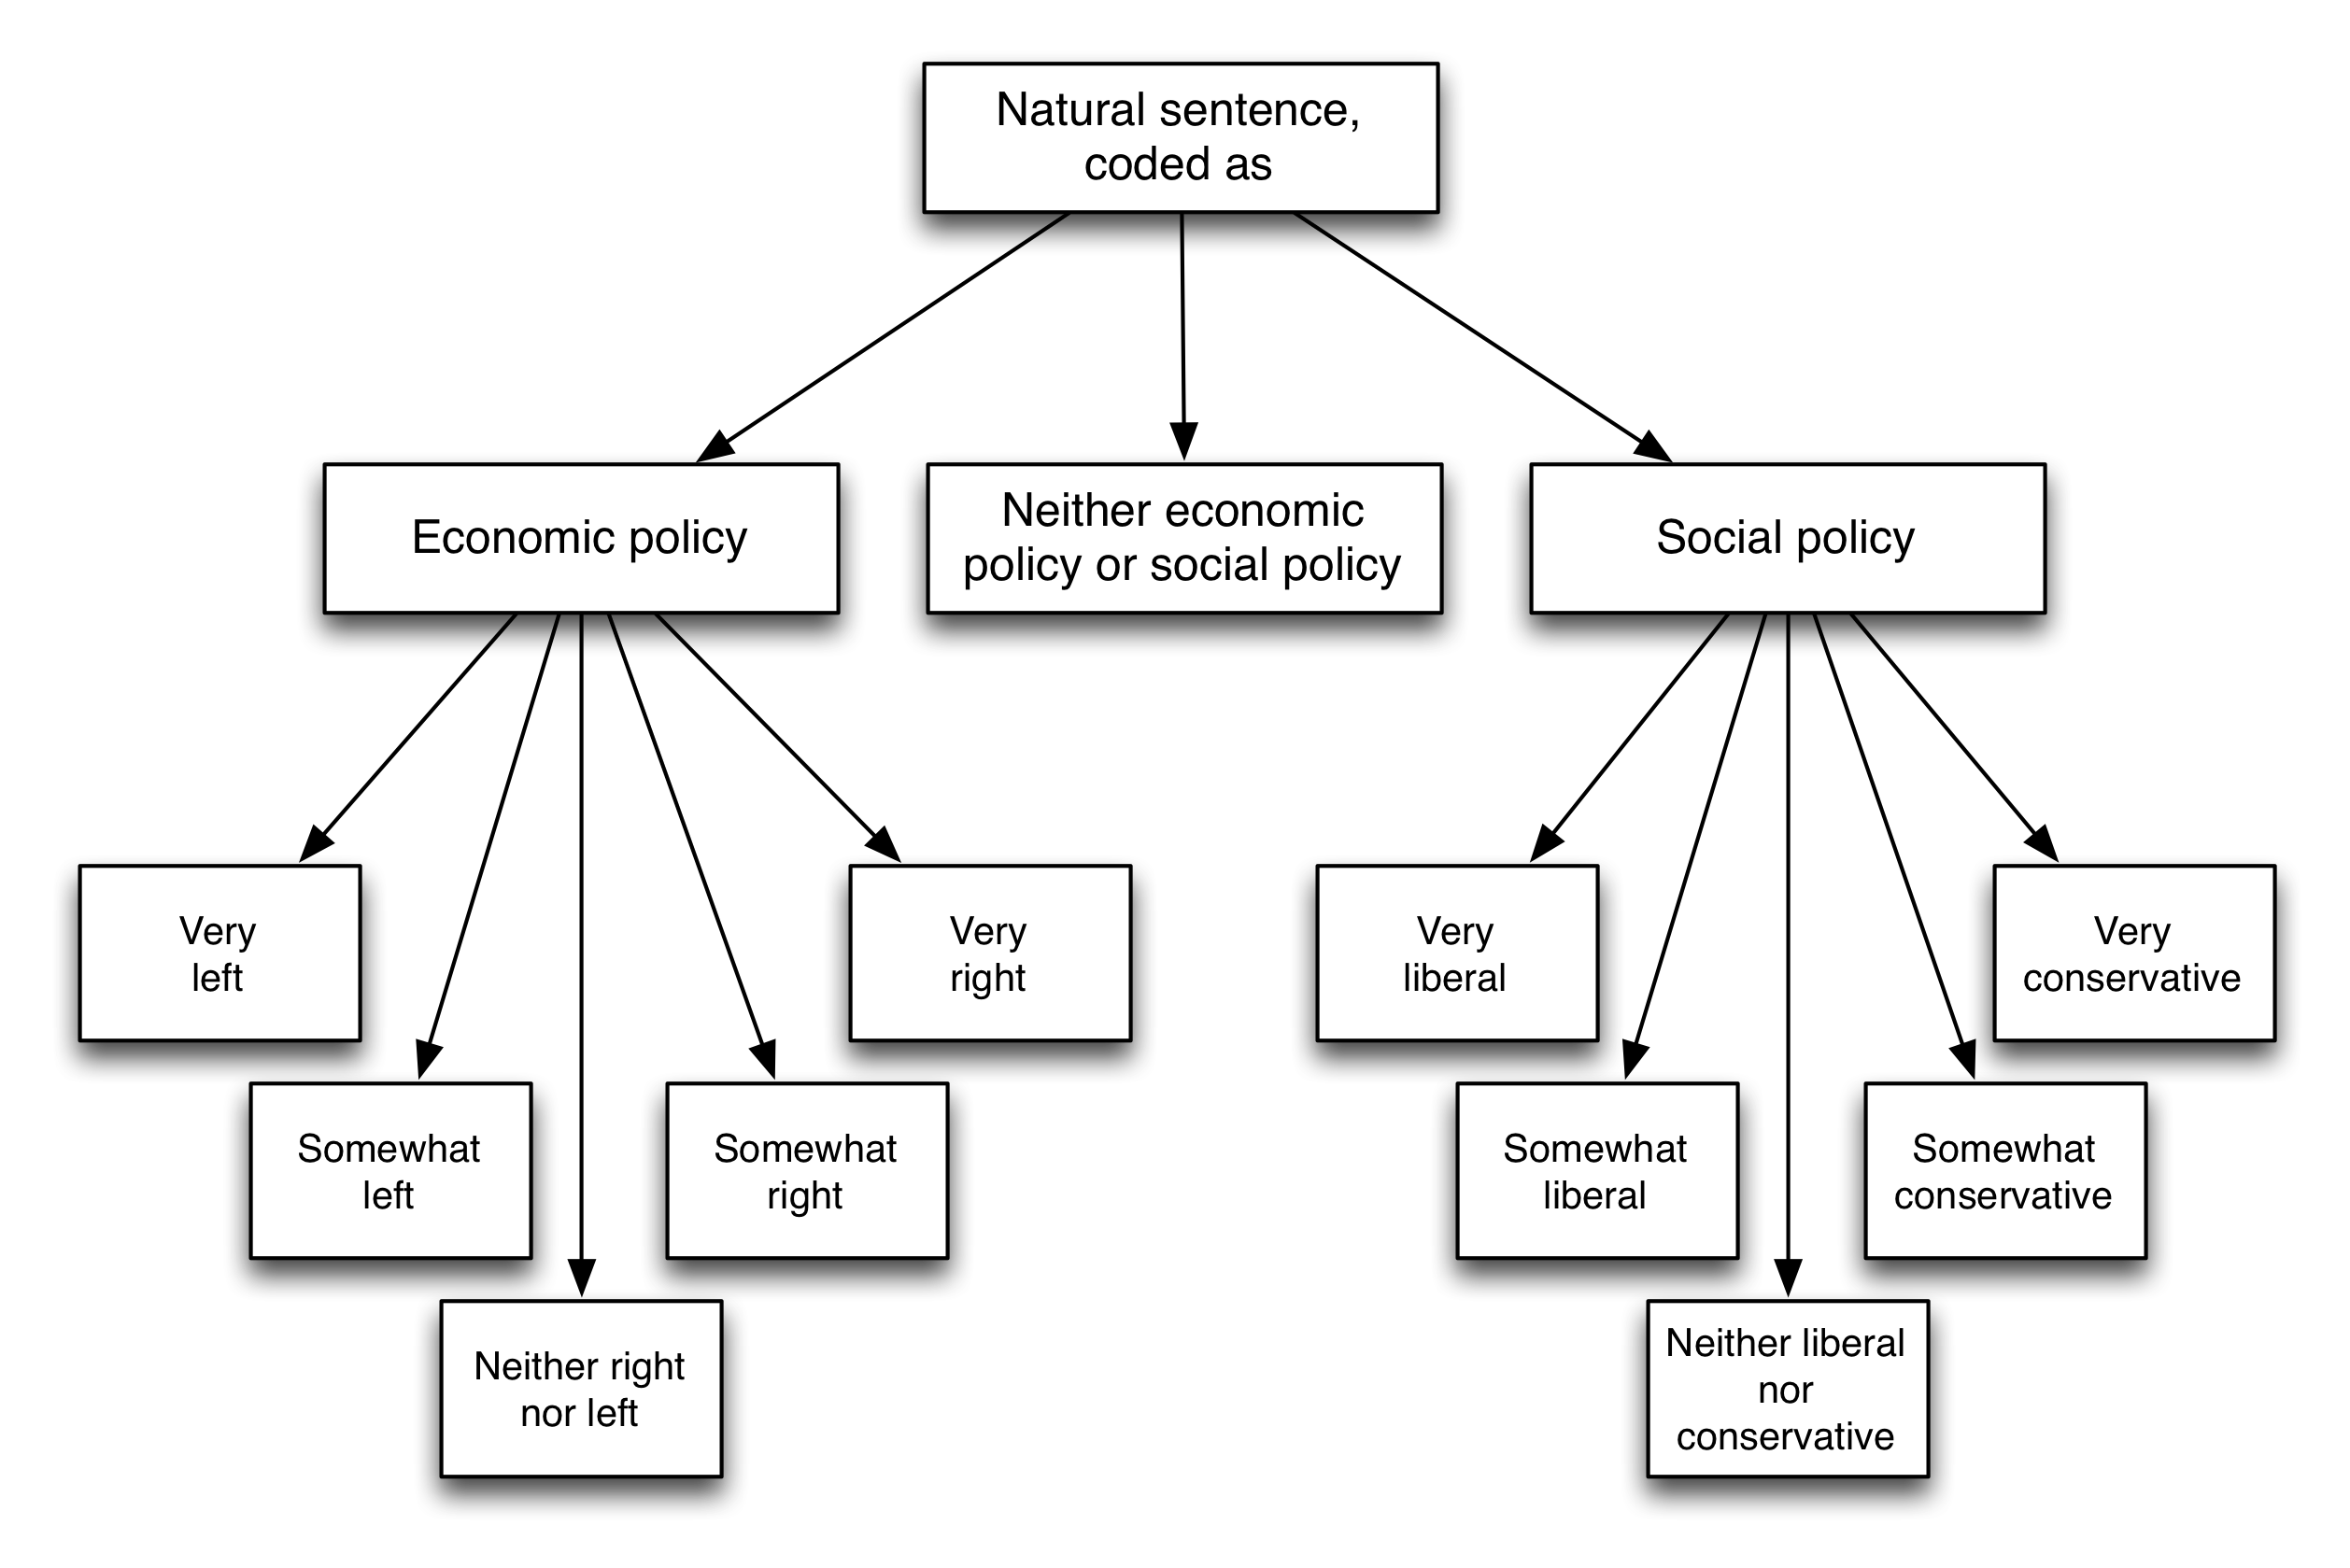 Gambar 5.5: Skema pengkodean dari Benoit et al. (2016). Pembaca diminta untuk mengklasifikasikan setiap kalimat sebagai mengacu pada kebijakan ekonomi (kiri atau kanan), kebijakan sosial (liberal atau konservatif), atau keduanya. Diadaptasi dari Benoit et al. (2016), gambar 1.